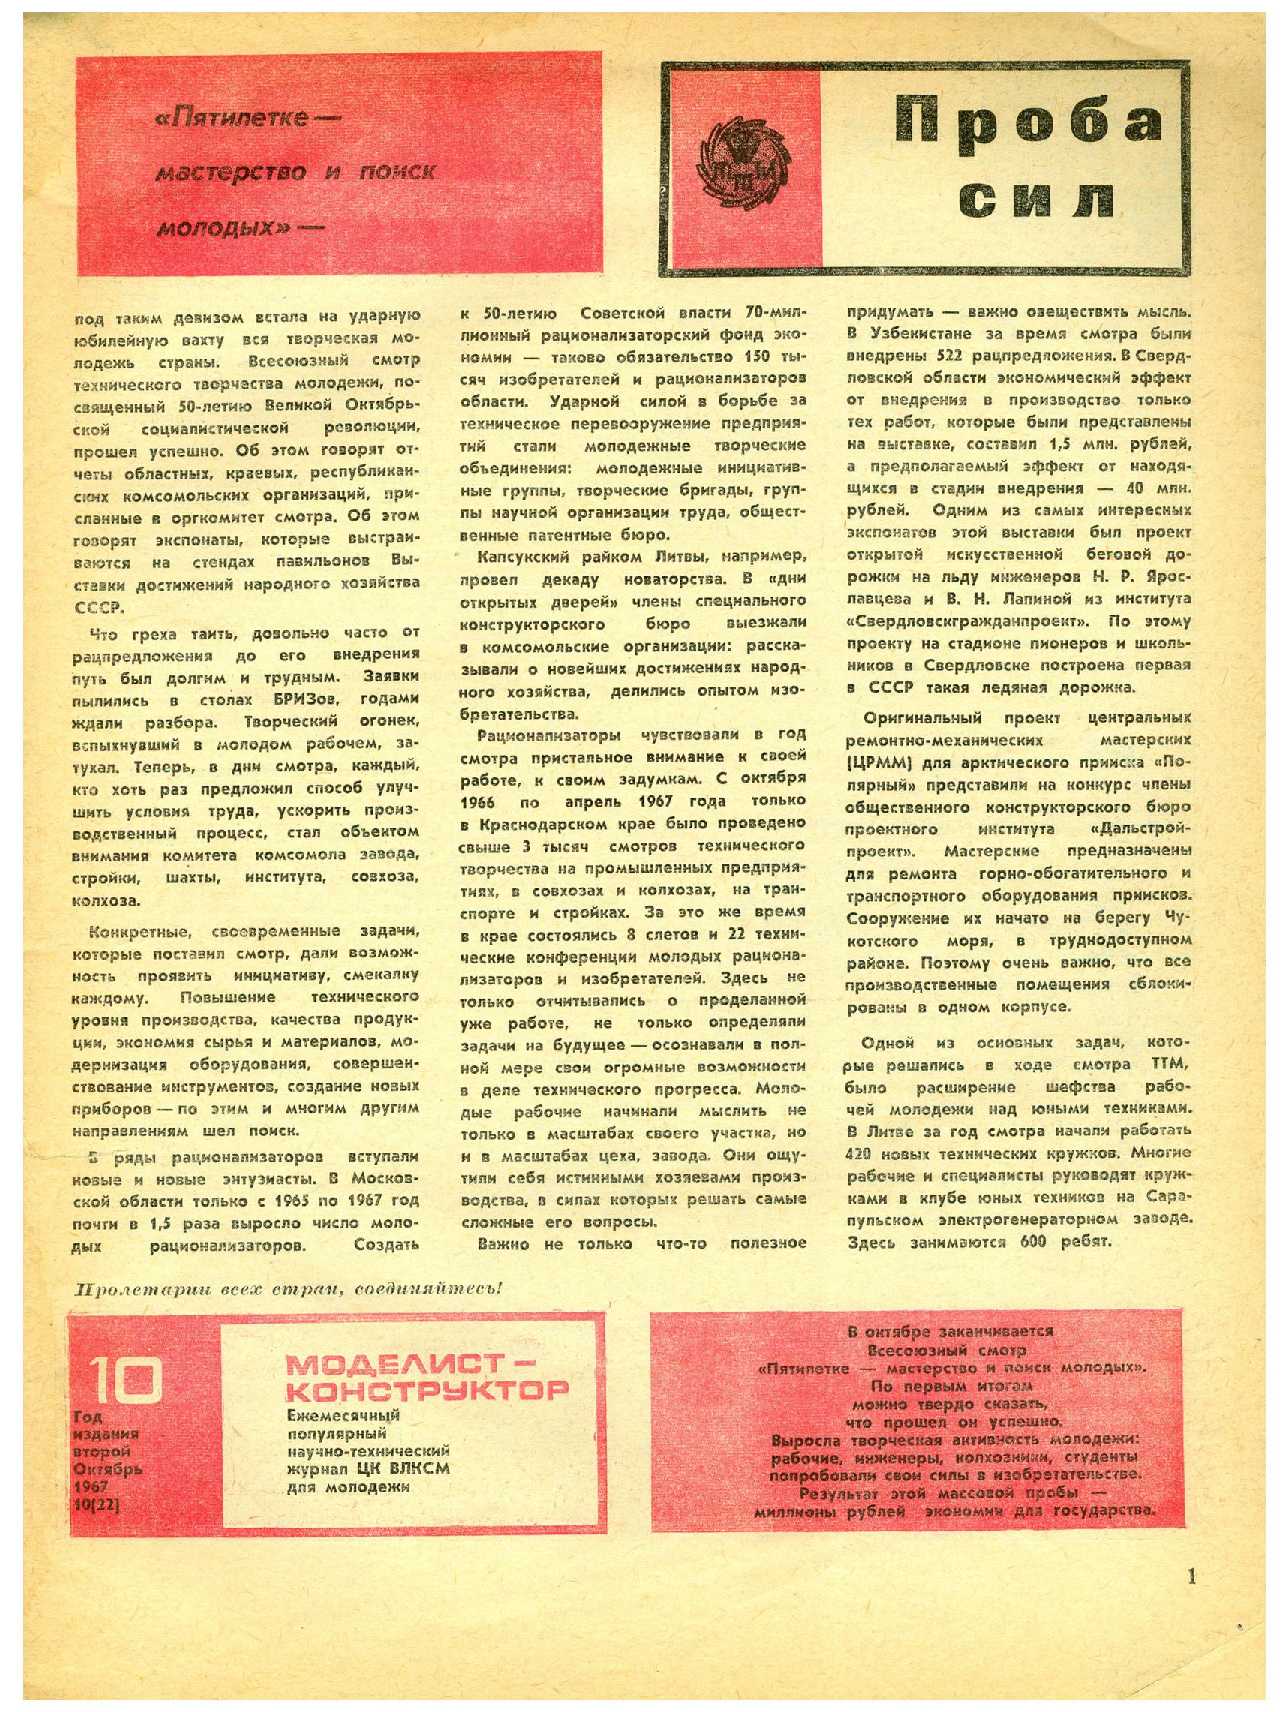 МК 10, 1967, 1 c.